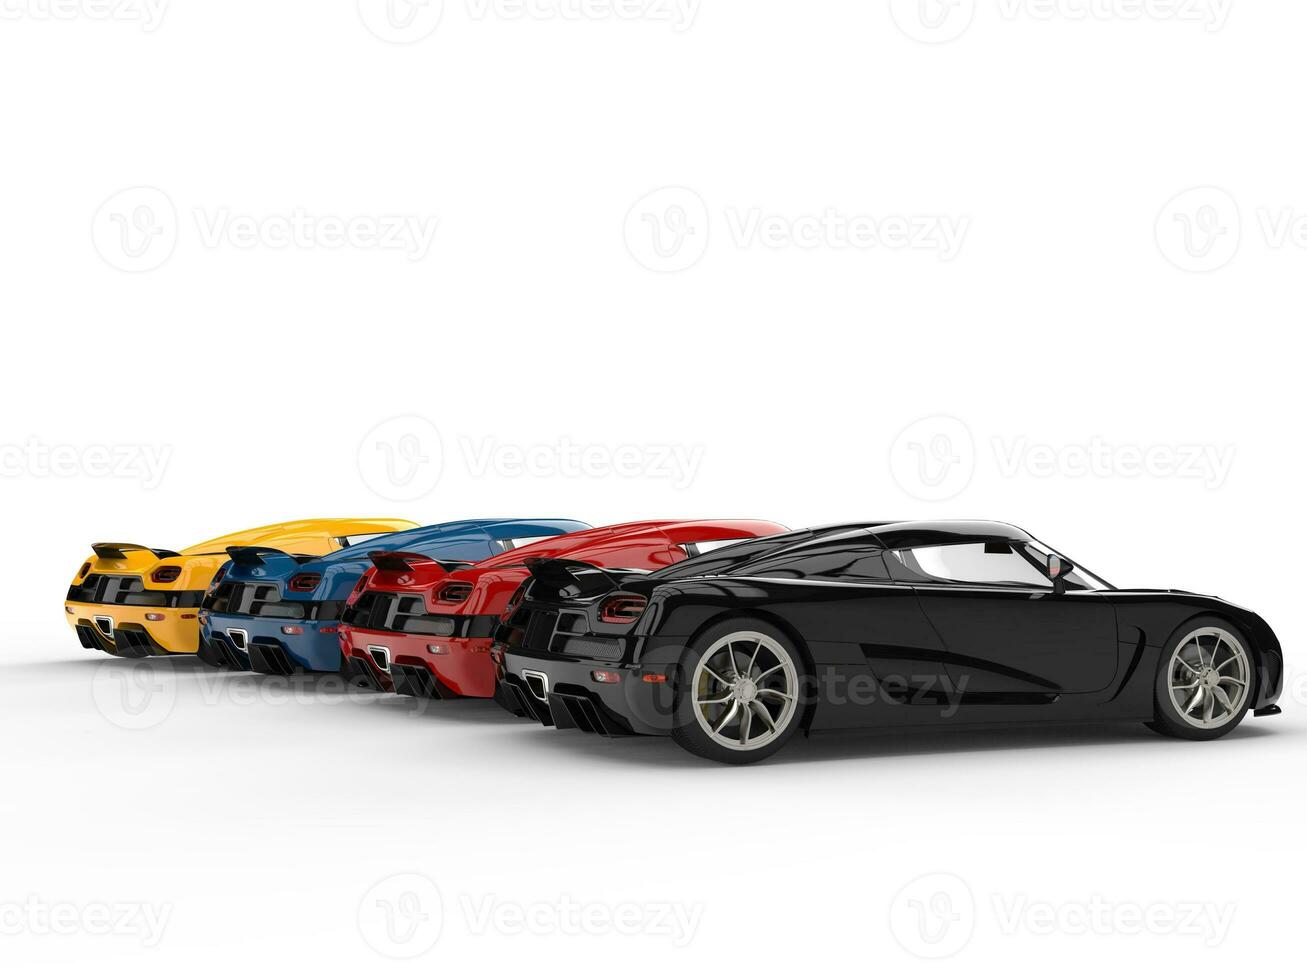 génial des sports concept voitures dans divers couleurs - retour la perspective vue photo